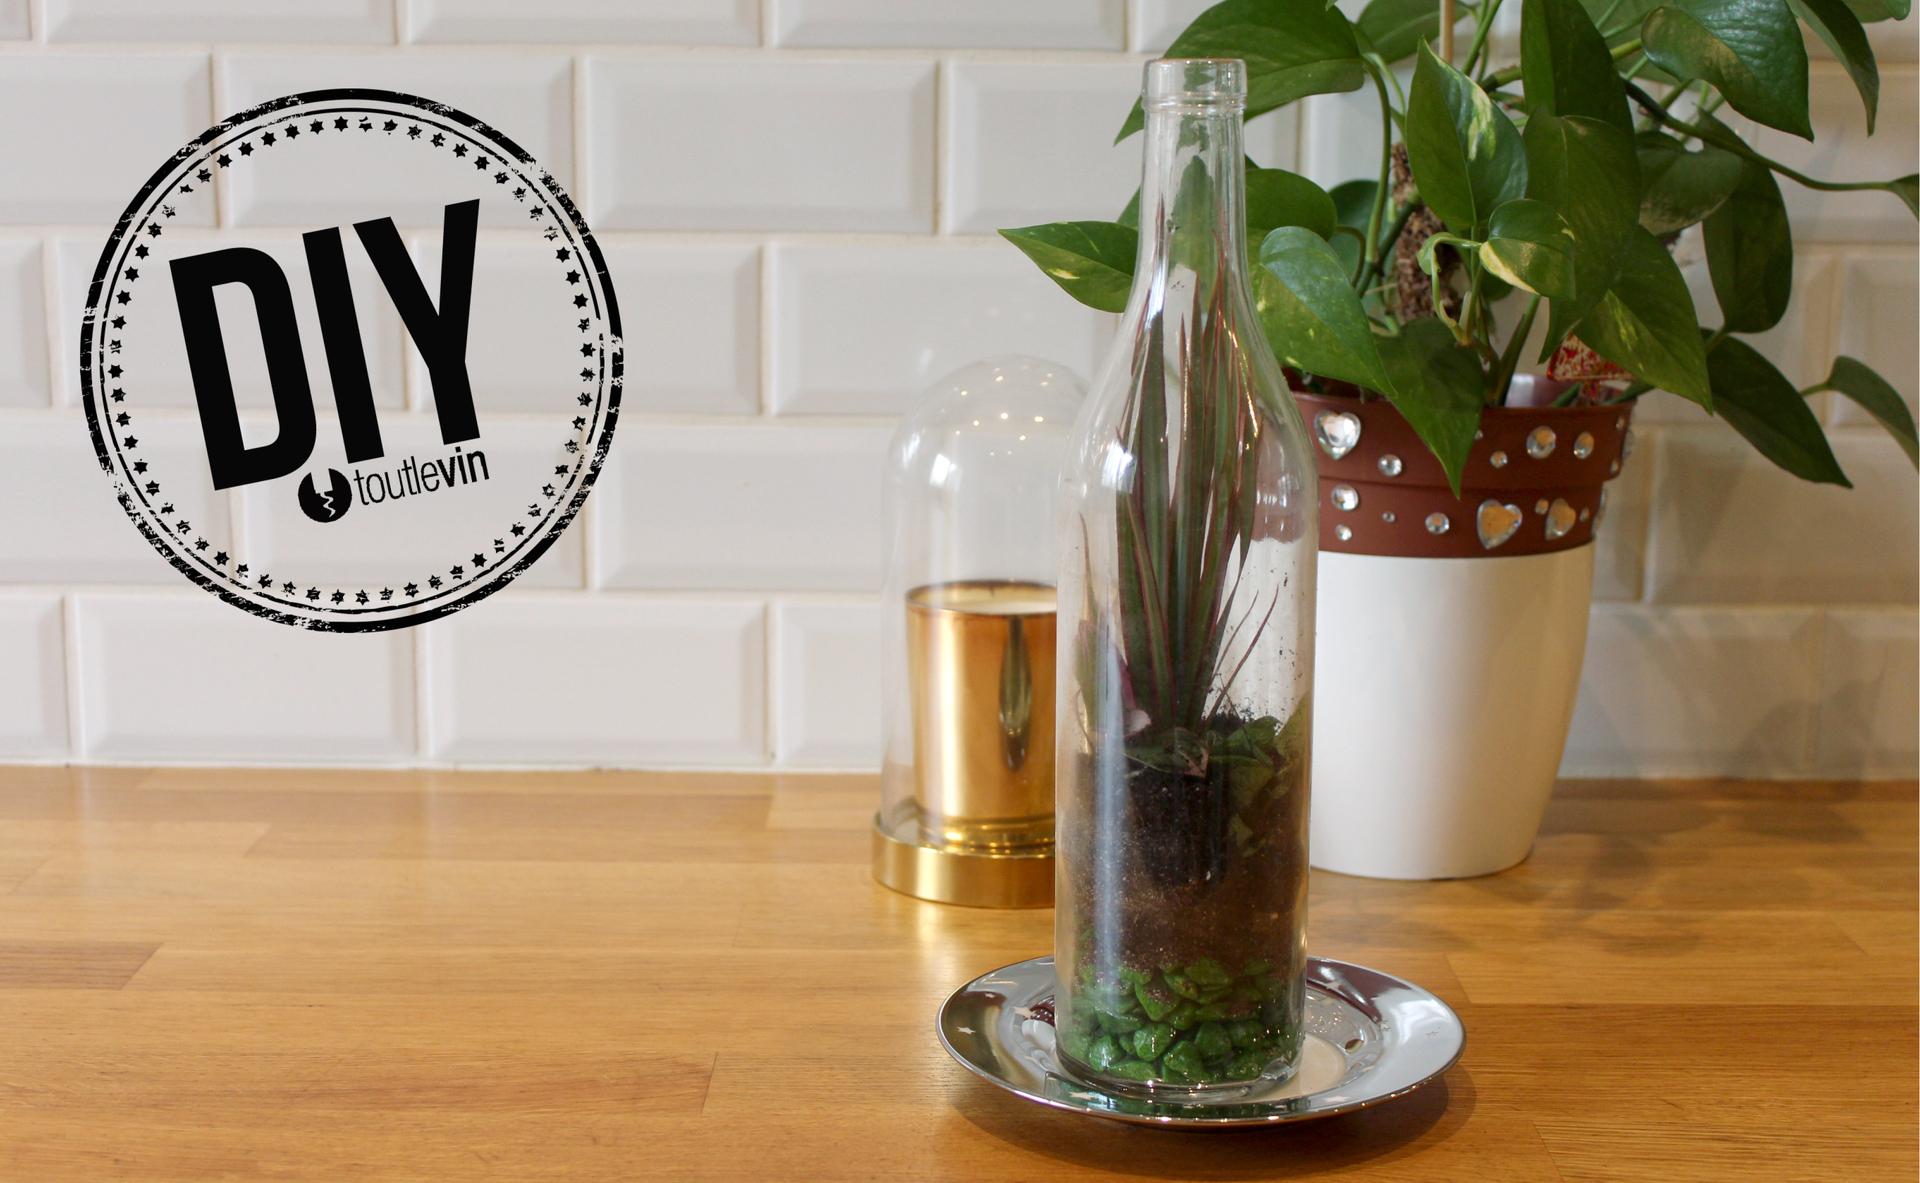 DIY : Créer un terrarium printanier dans une bouteille